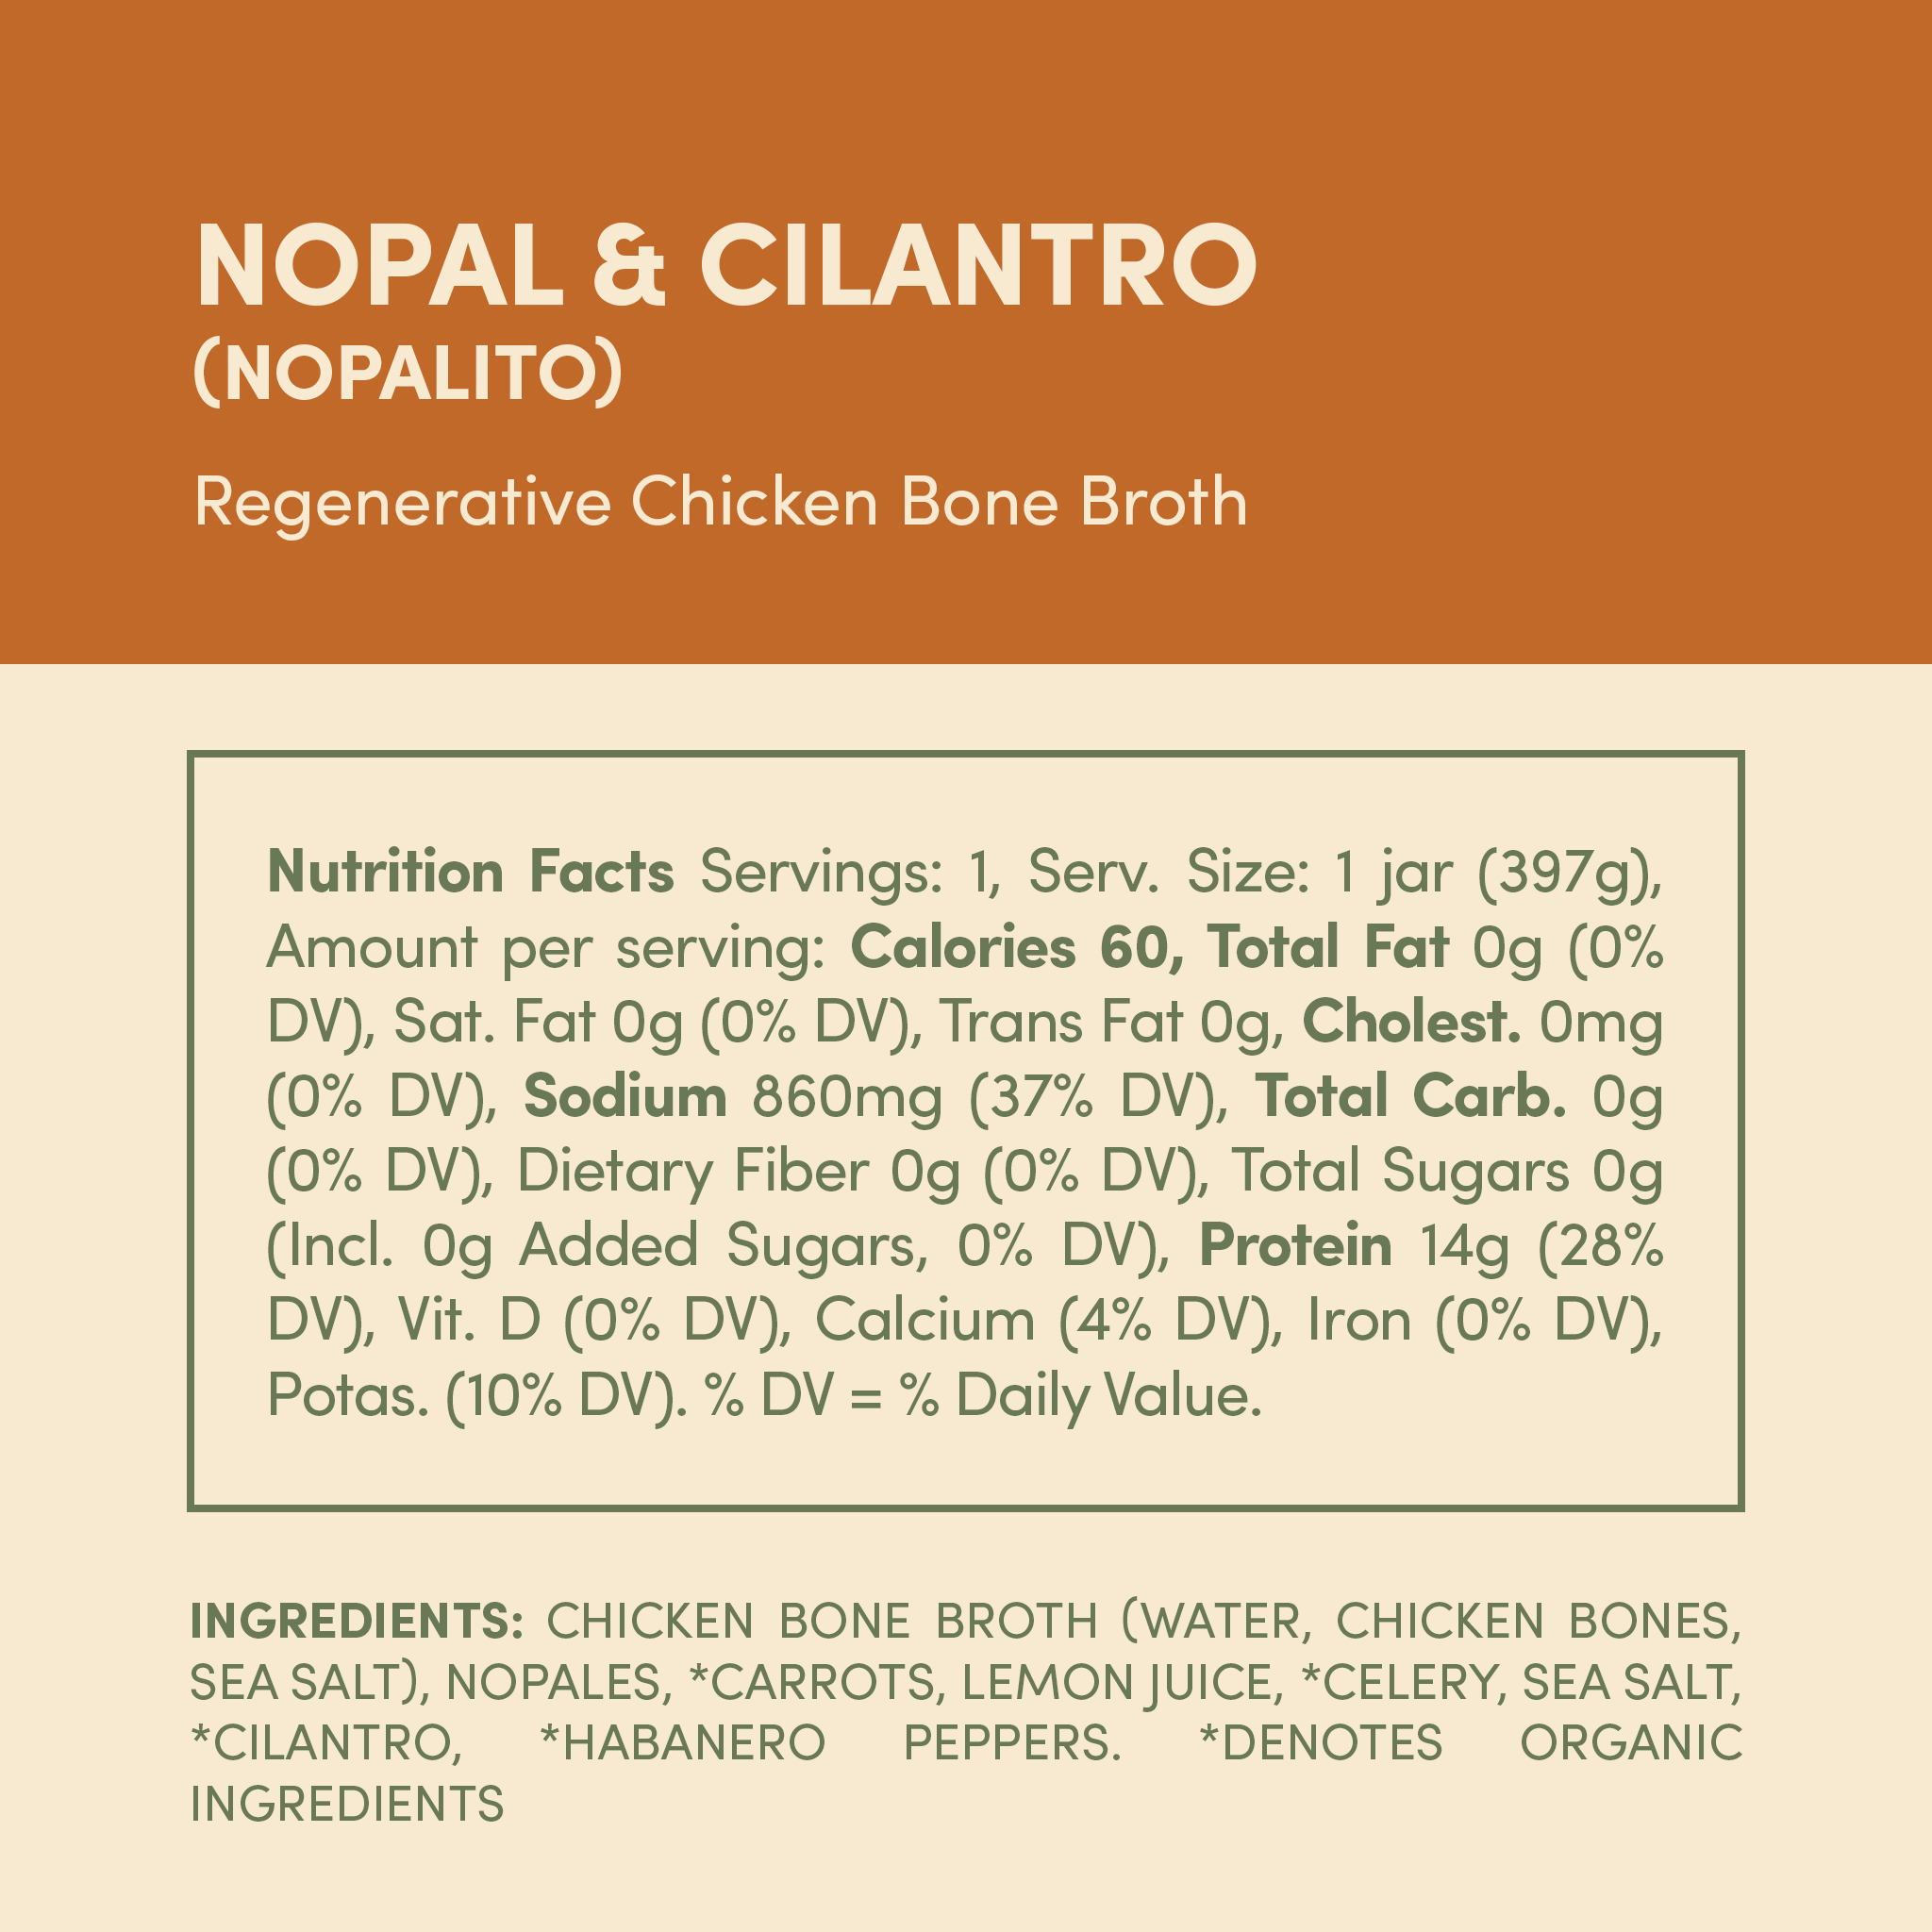 Regenerative Chicken Bone Broth - Nopal & Cilantro (Nopalito) - 4 Jars